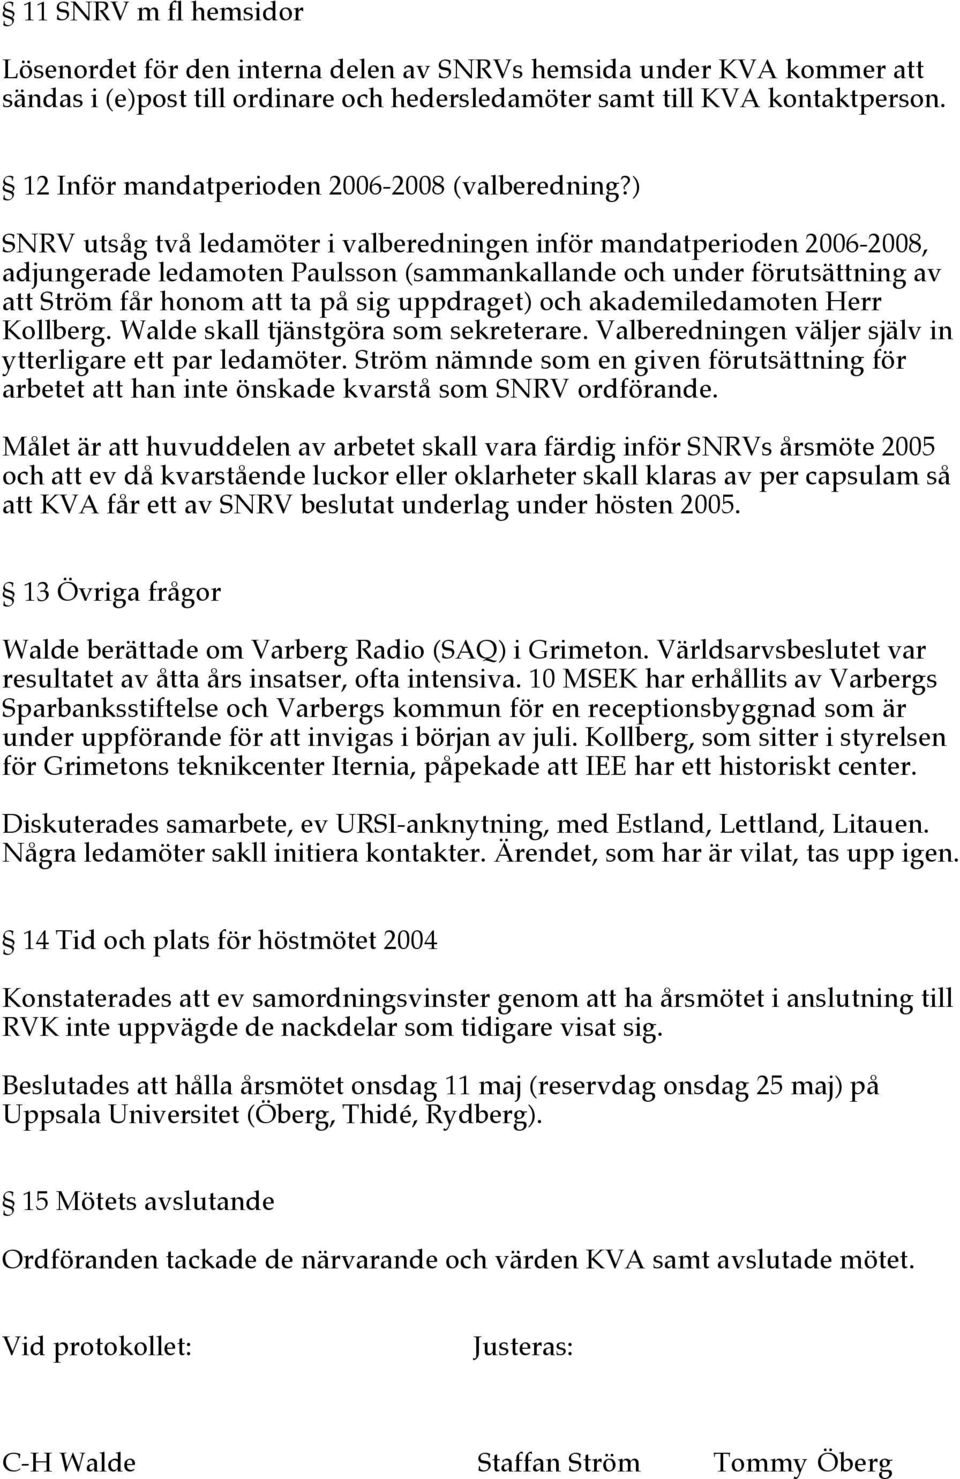 ) SNRV utsåg två ledamöter i valberedningen inför mandatperioden 2006-2008, adjungerade ledamoten Paulsson (sammankallande och under förutsättning av att Ström får honom att ta på sig uppdraget) och